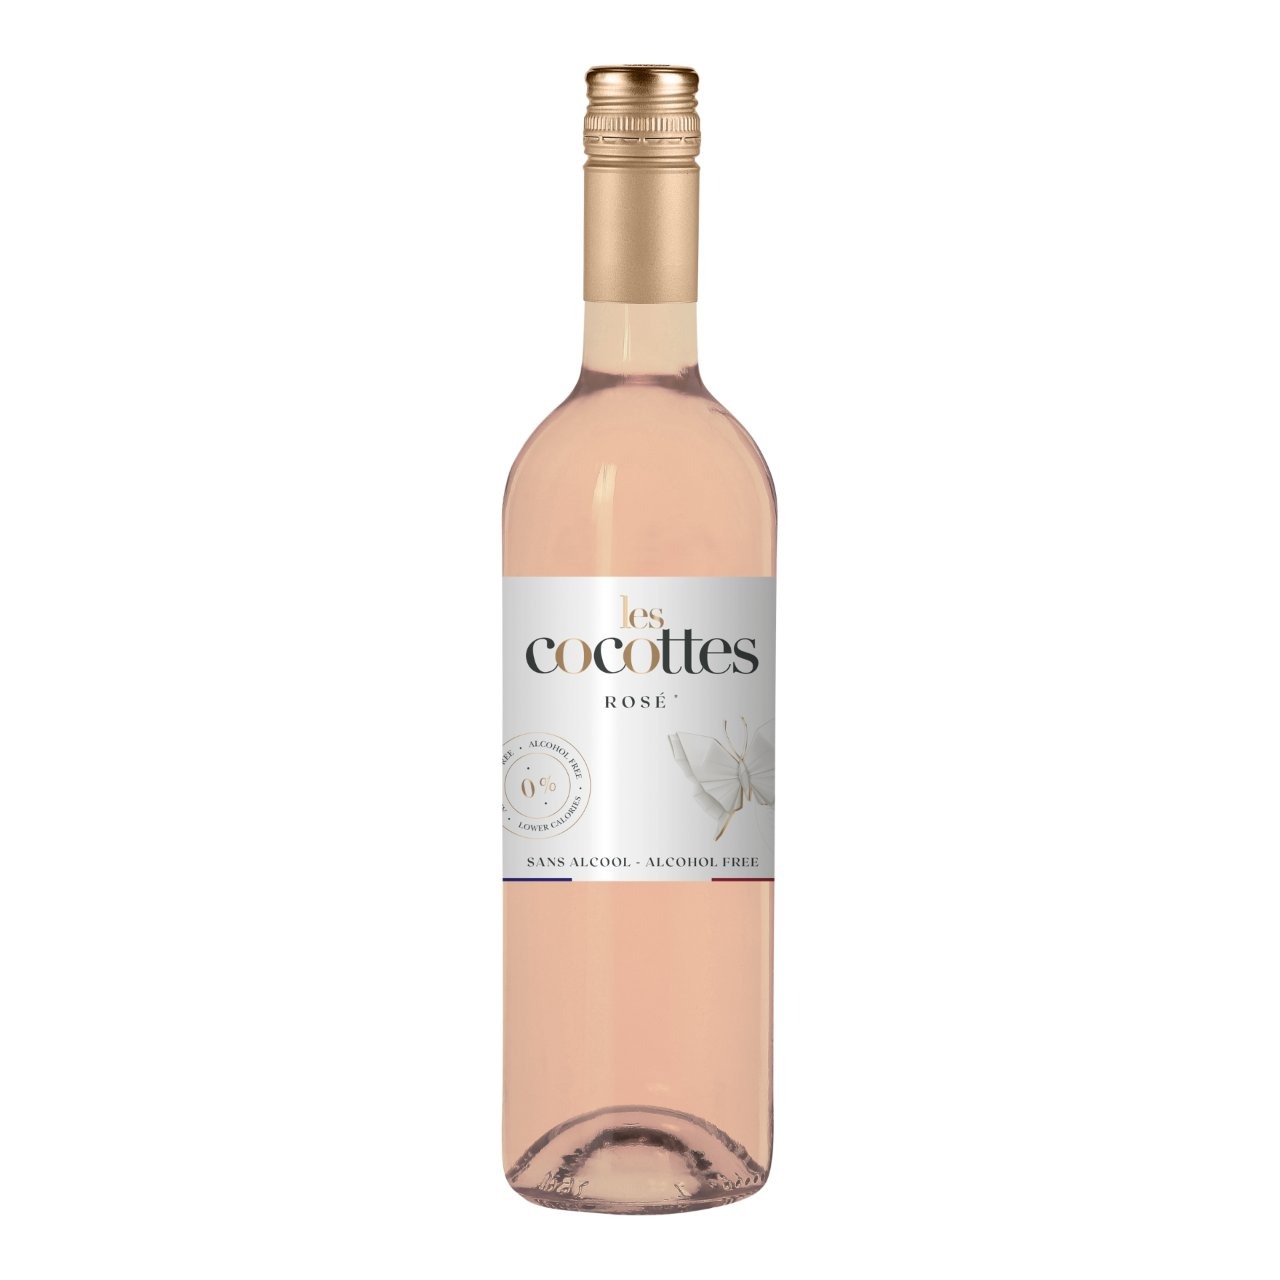 Natuur Haalbaarheid Draai vast Les Cocottes rosé Pays d'Oc Frankrijk 0% en BIO kopen? | Gratis verzending  vanaf € 50,- | Wijnkeuze-online.nl